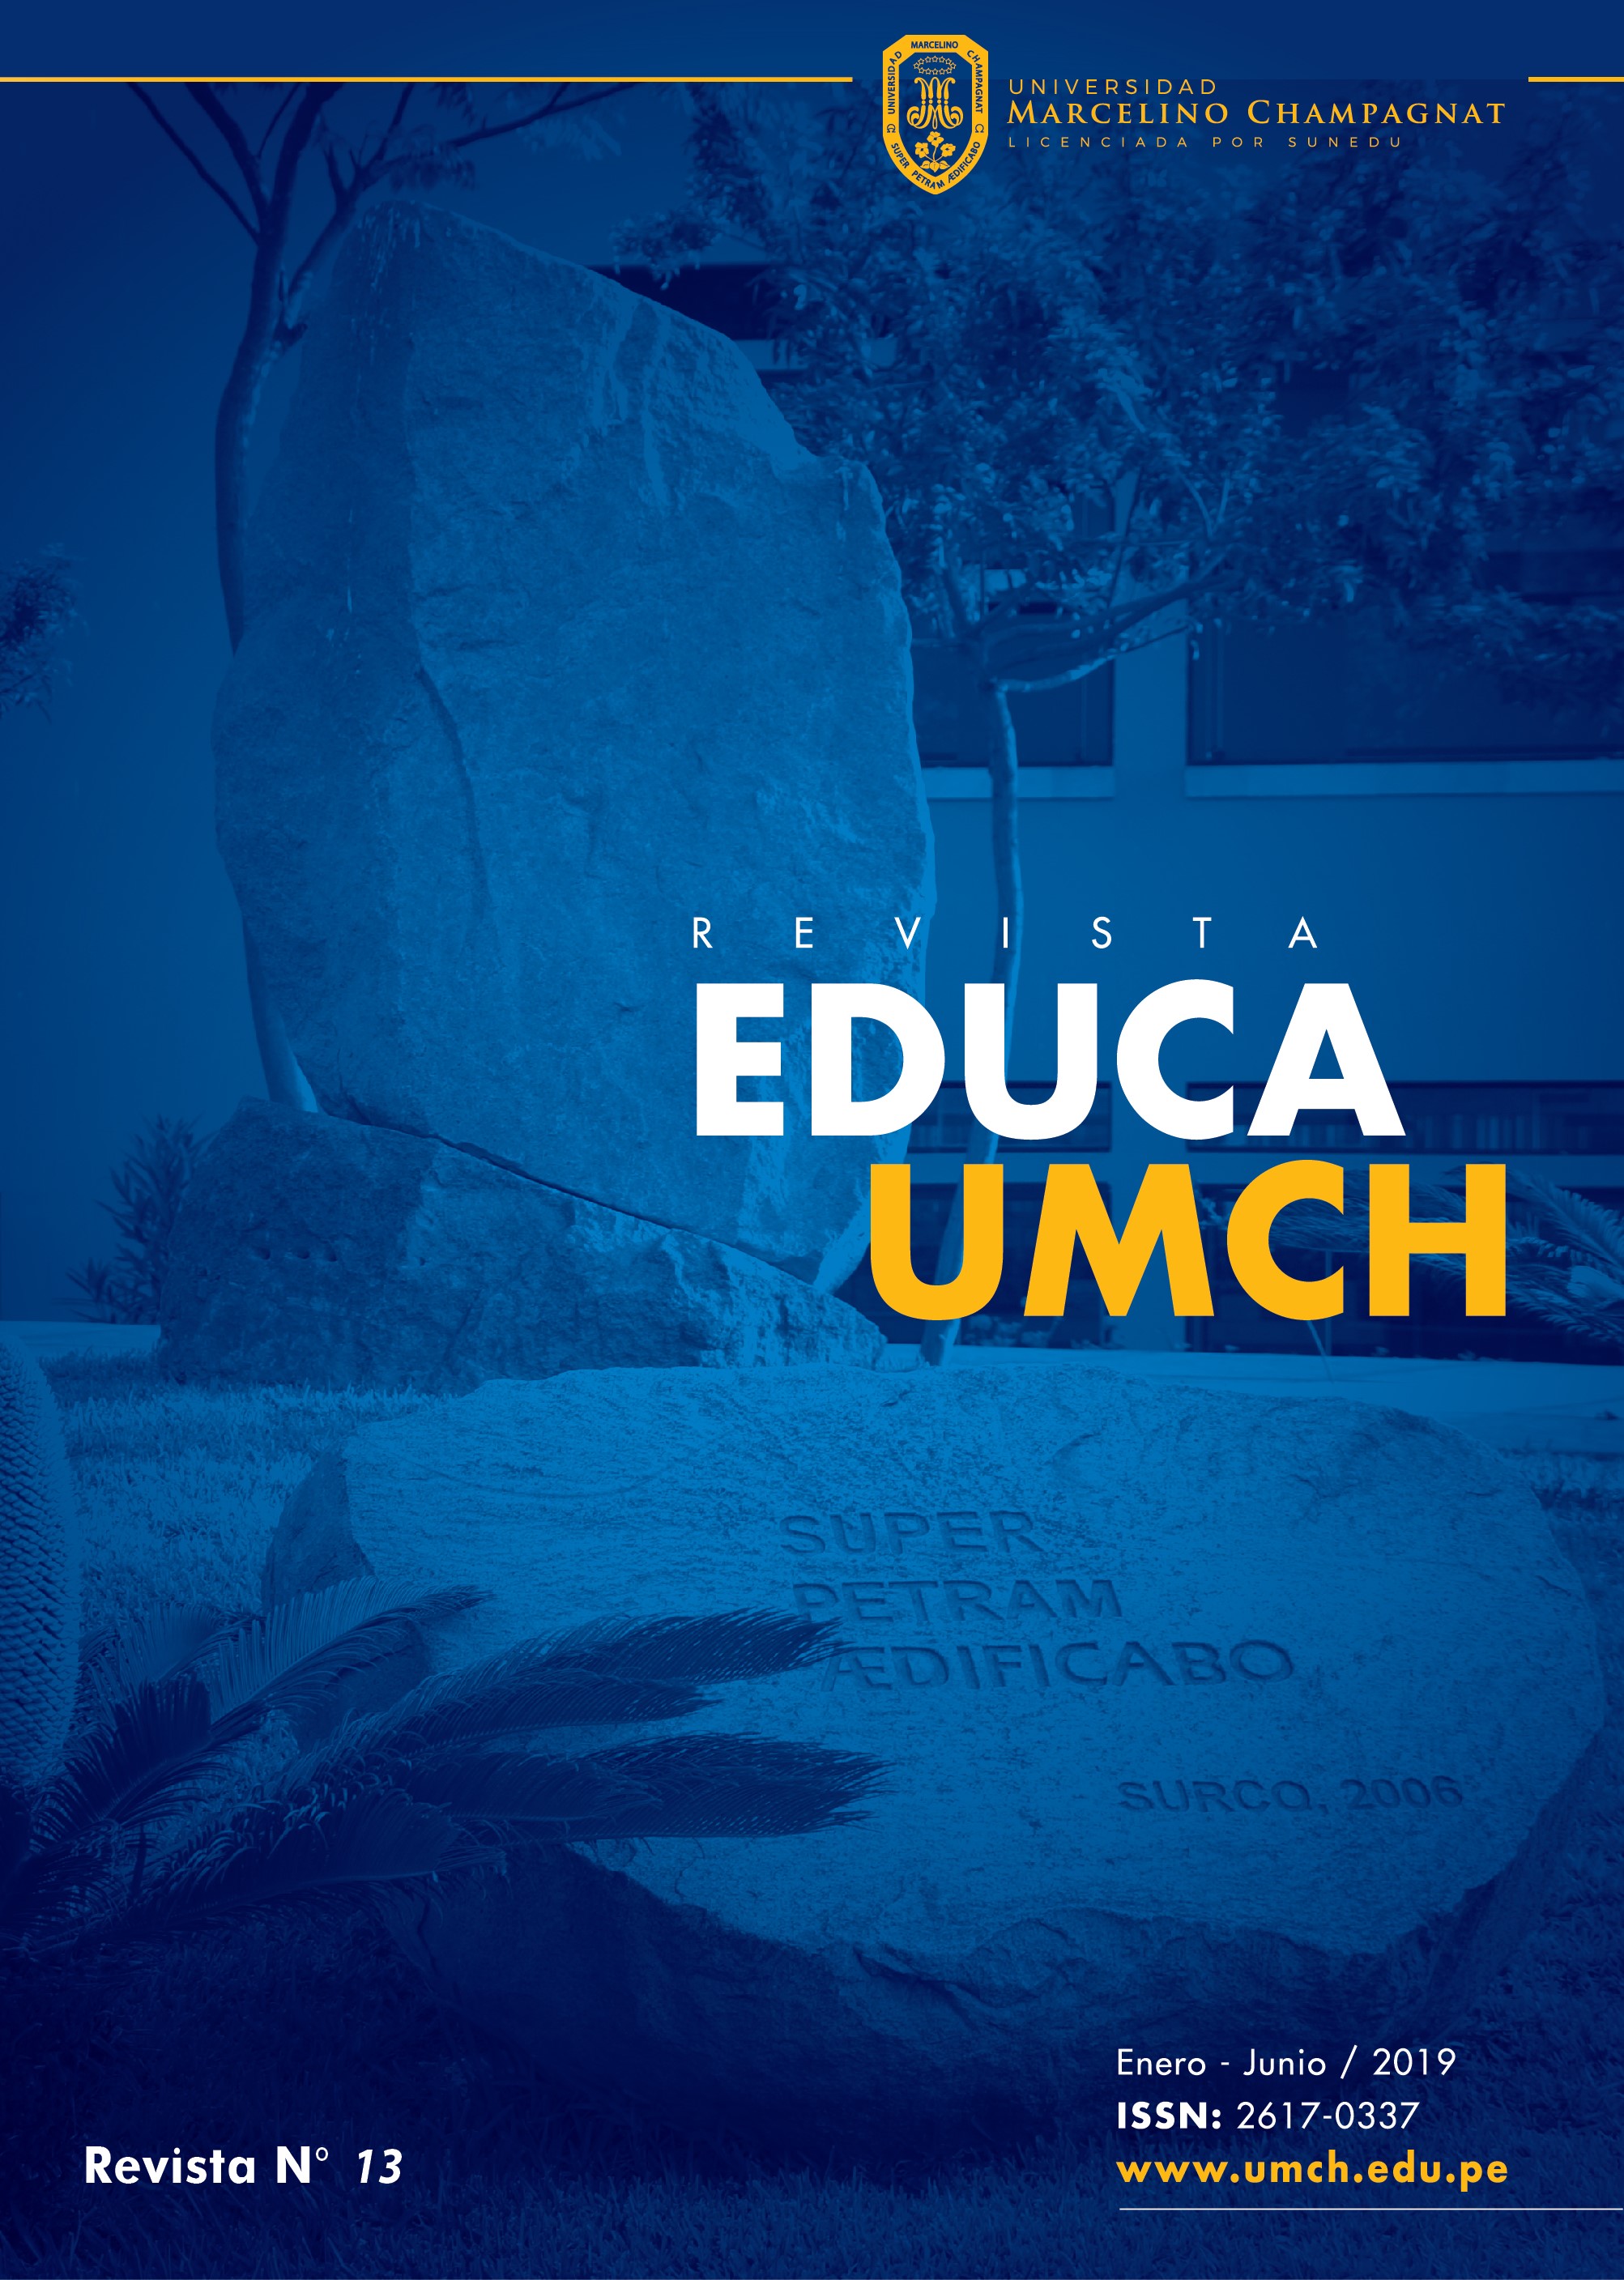 					Ver Núm. 13 (2019): Revista Educa - UMCH N°13 2019 (enero - junio)
				